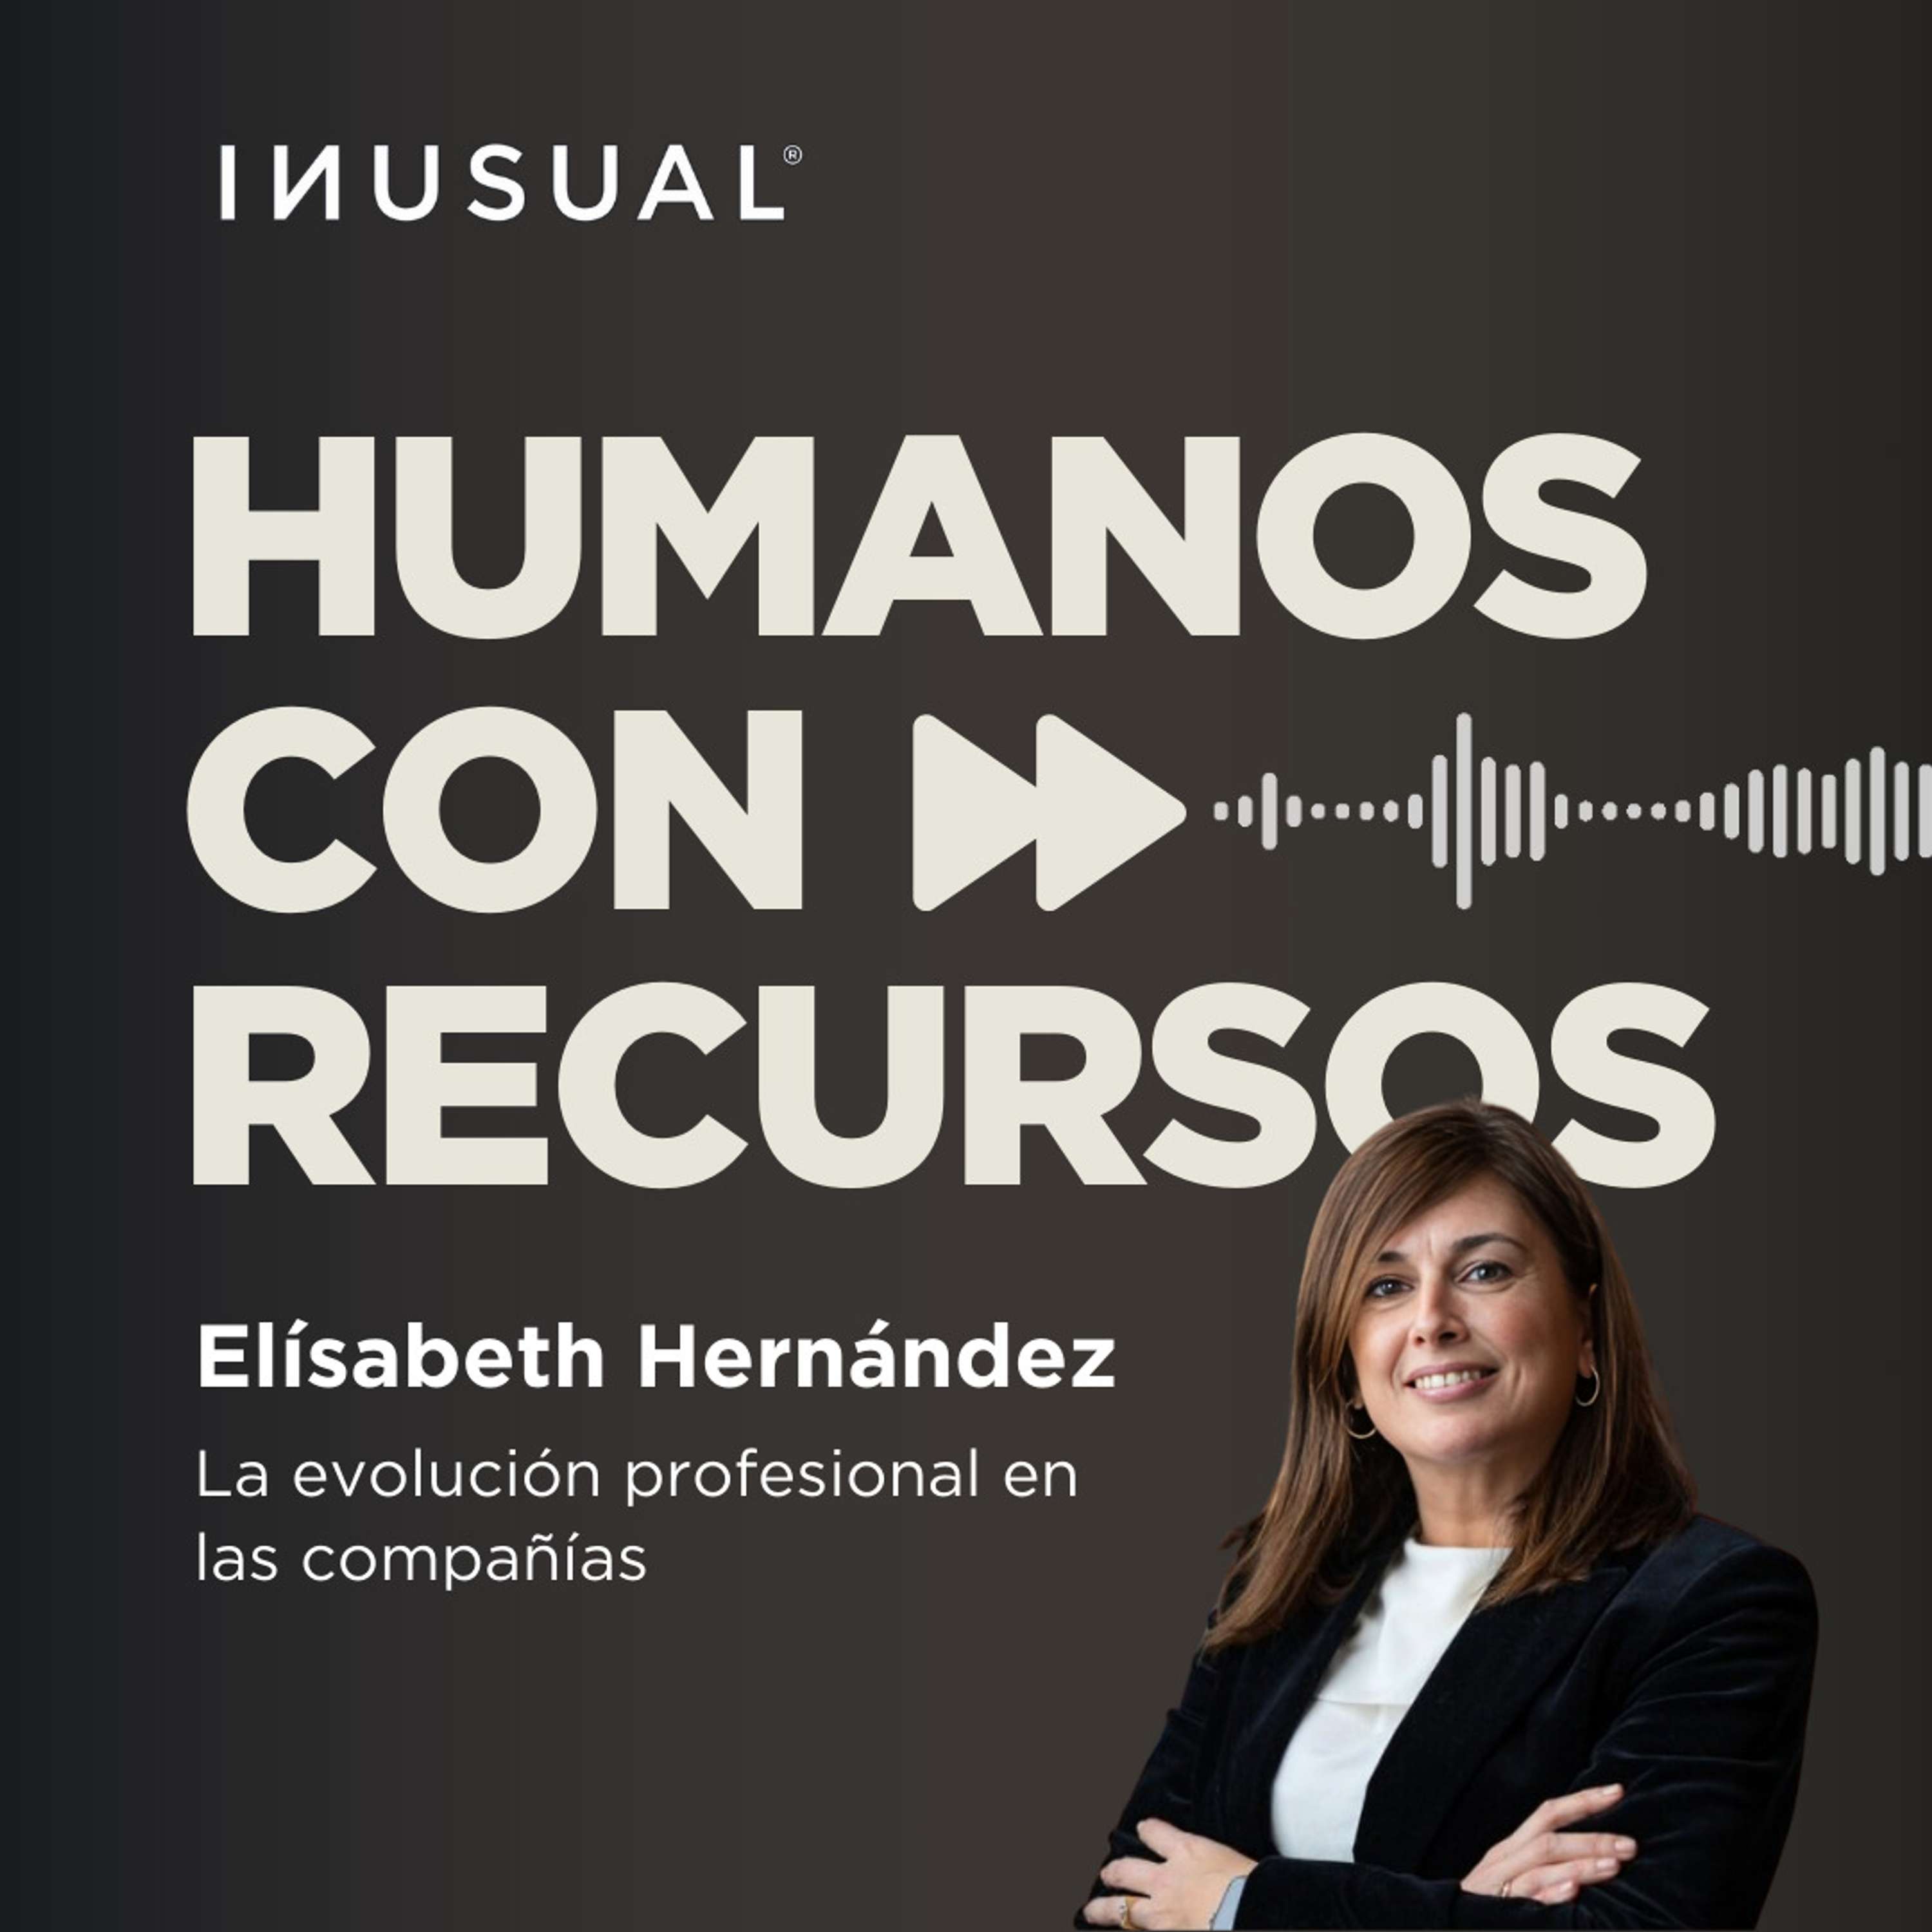 La evolución profesional en las compañías, con Elísabeth Hernández [R]